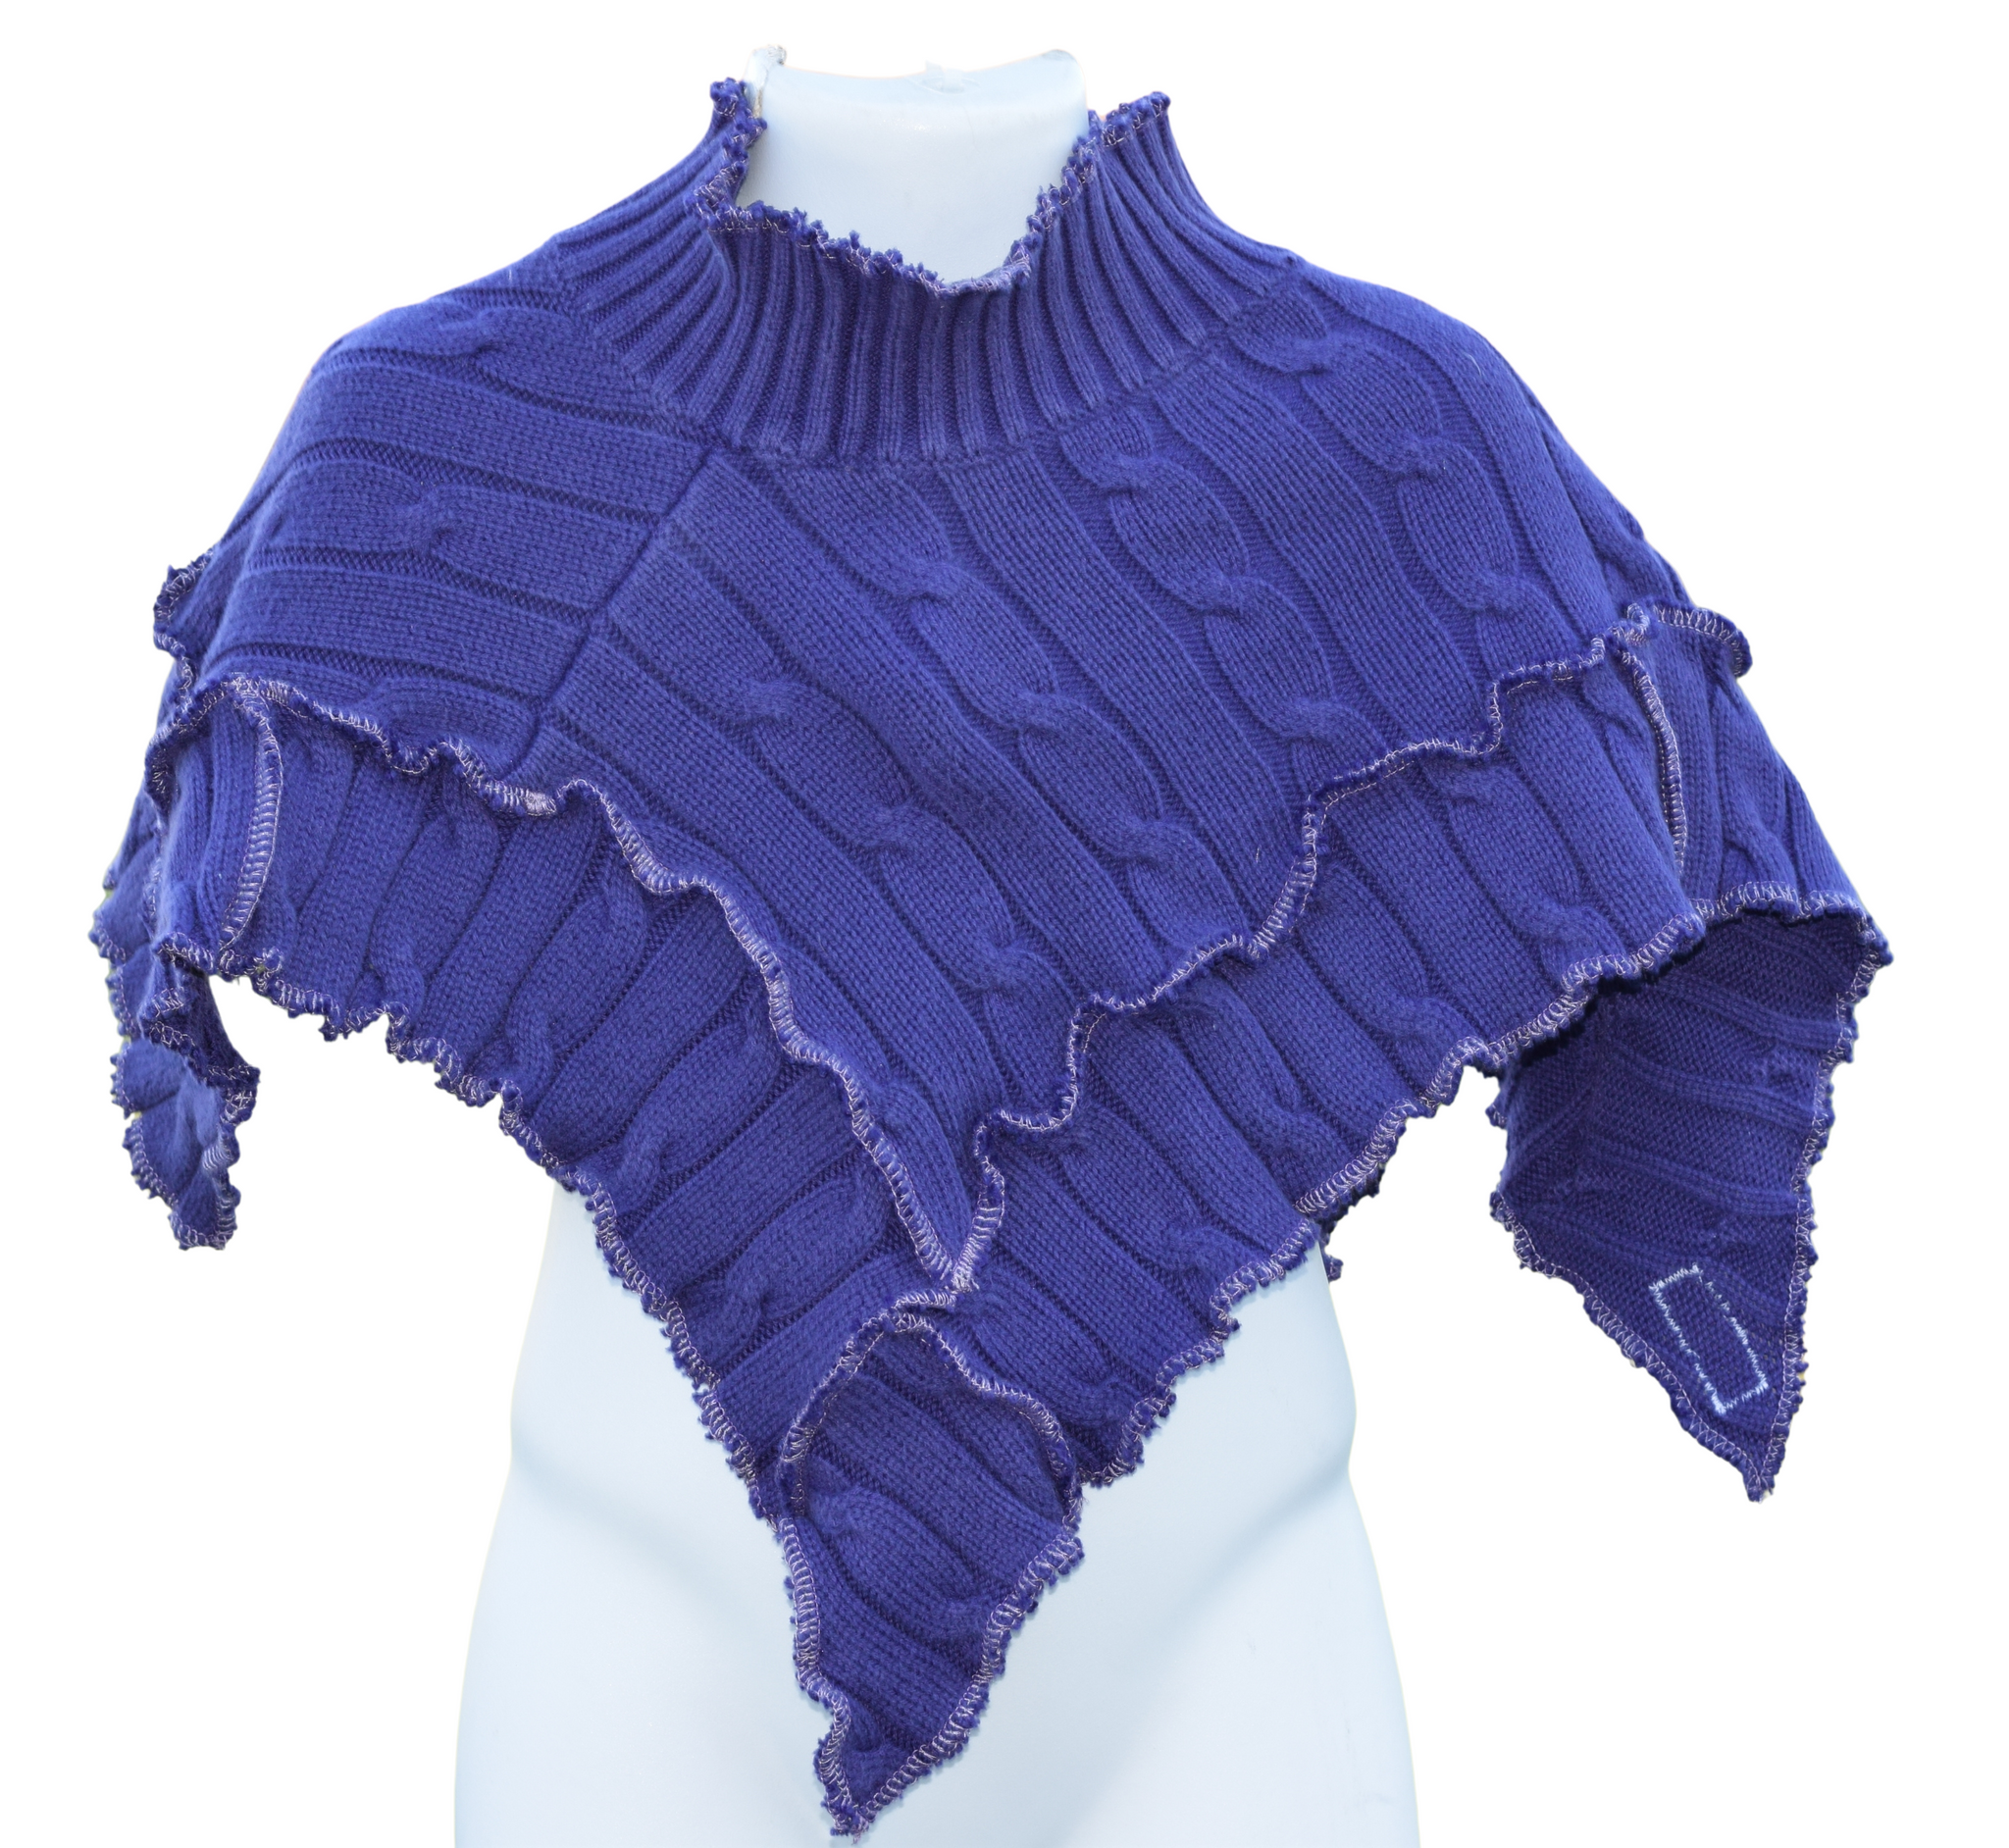 Infant Poncho Purple cotton Cable Knit - Unique Spirit Designs